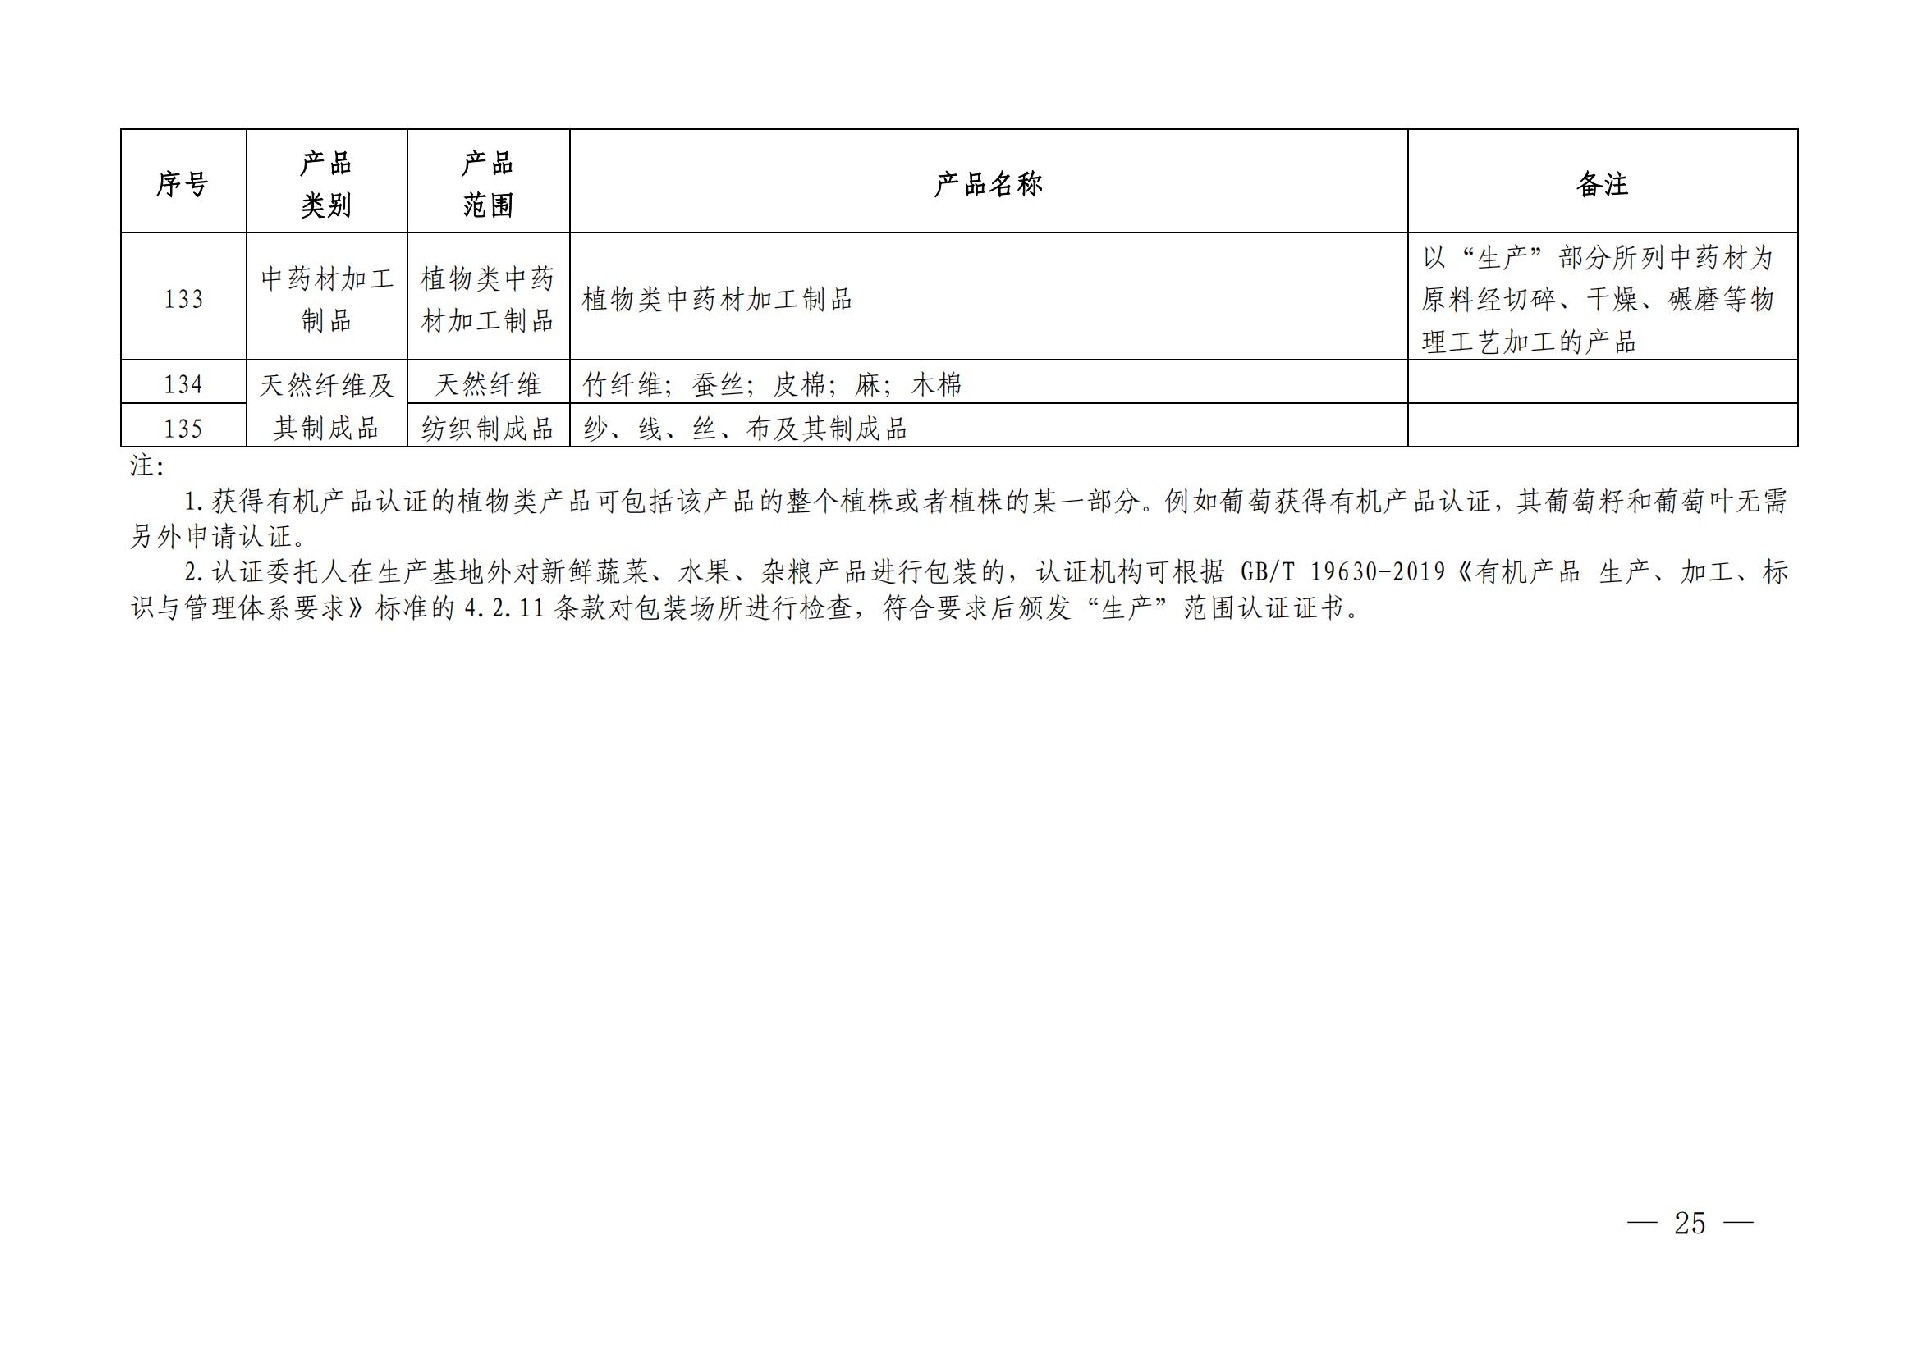 有机产品认证目录【认监委2019年第22号公告】(1)_24.jpg